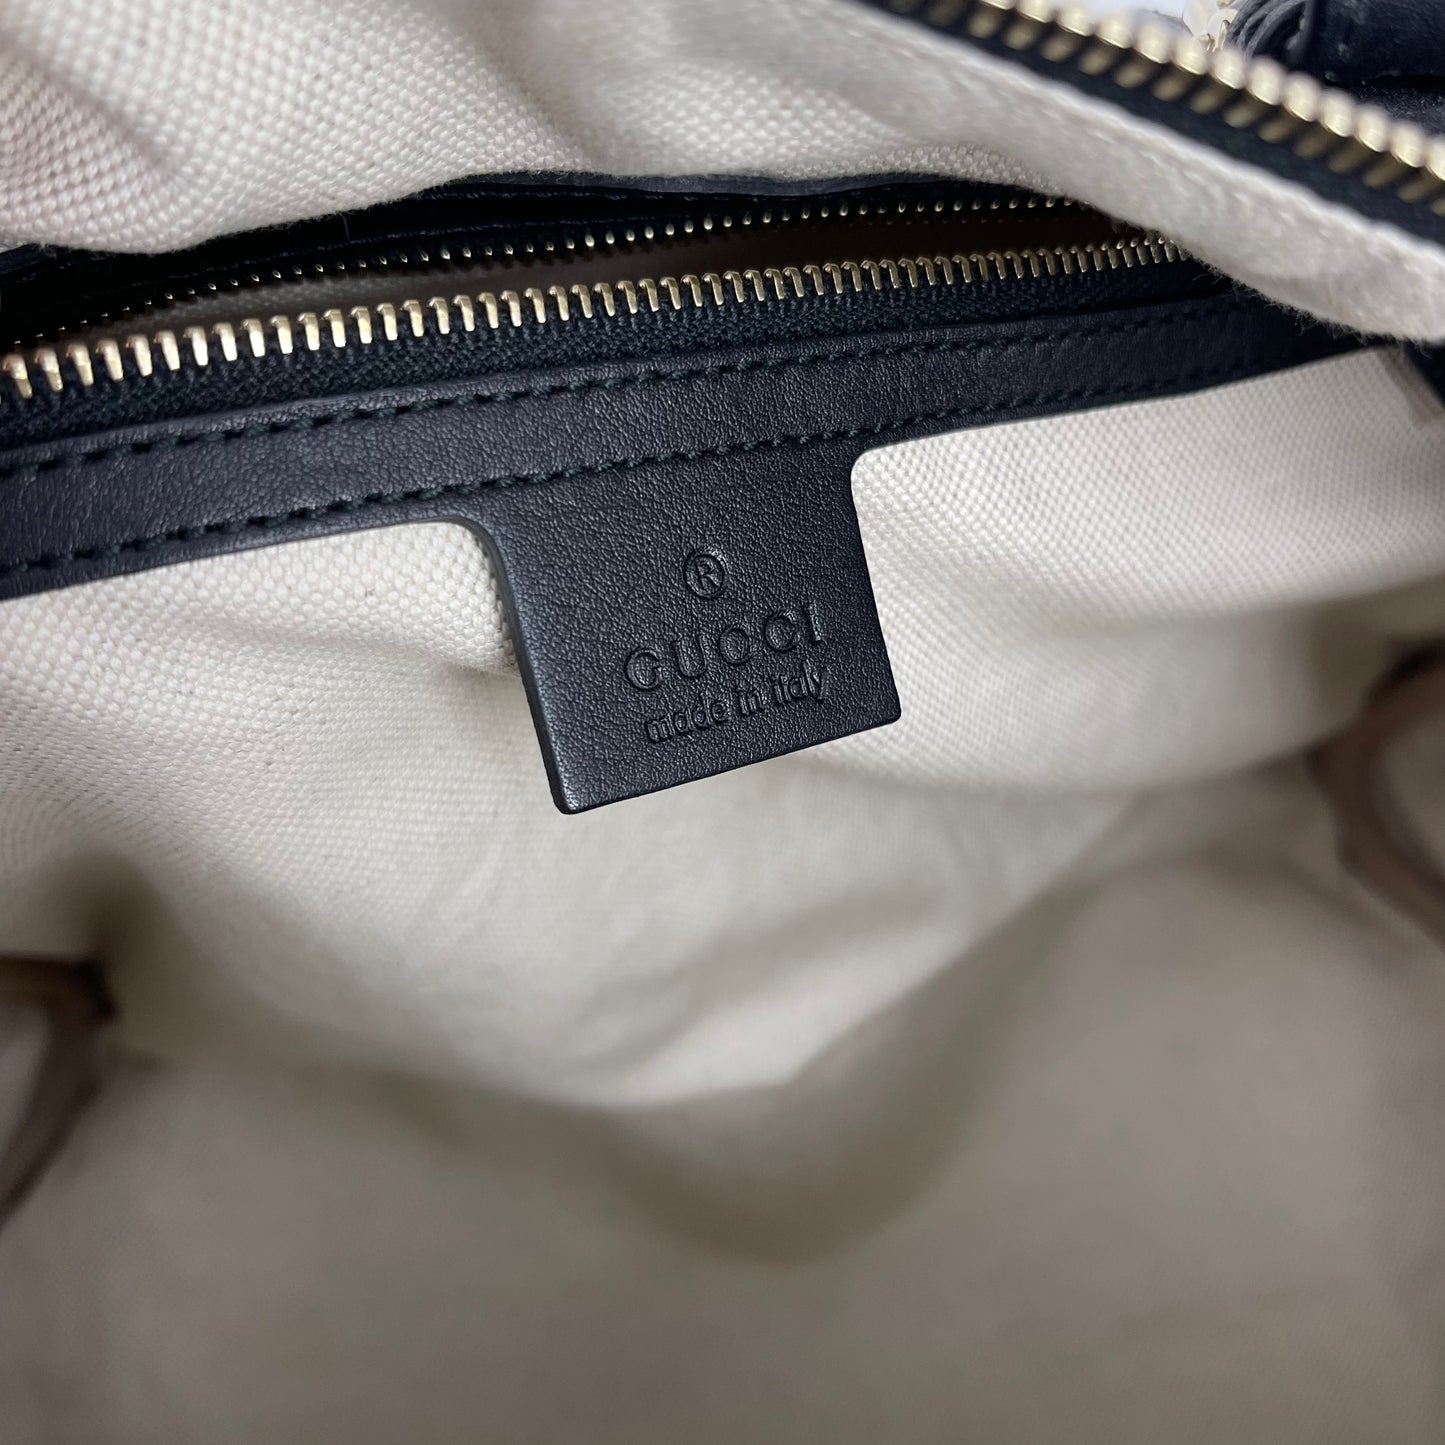 Authentic Gucci Black Guccissima Leather Boston Bag